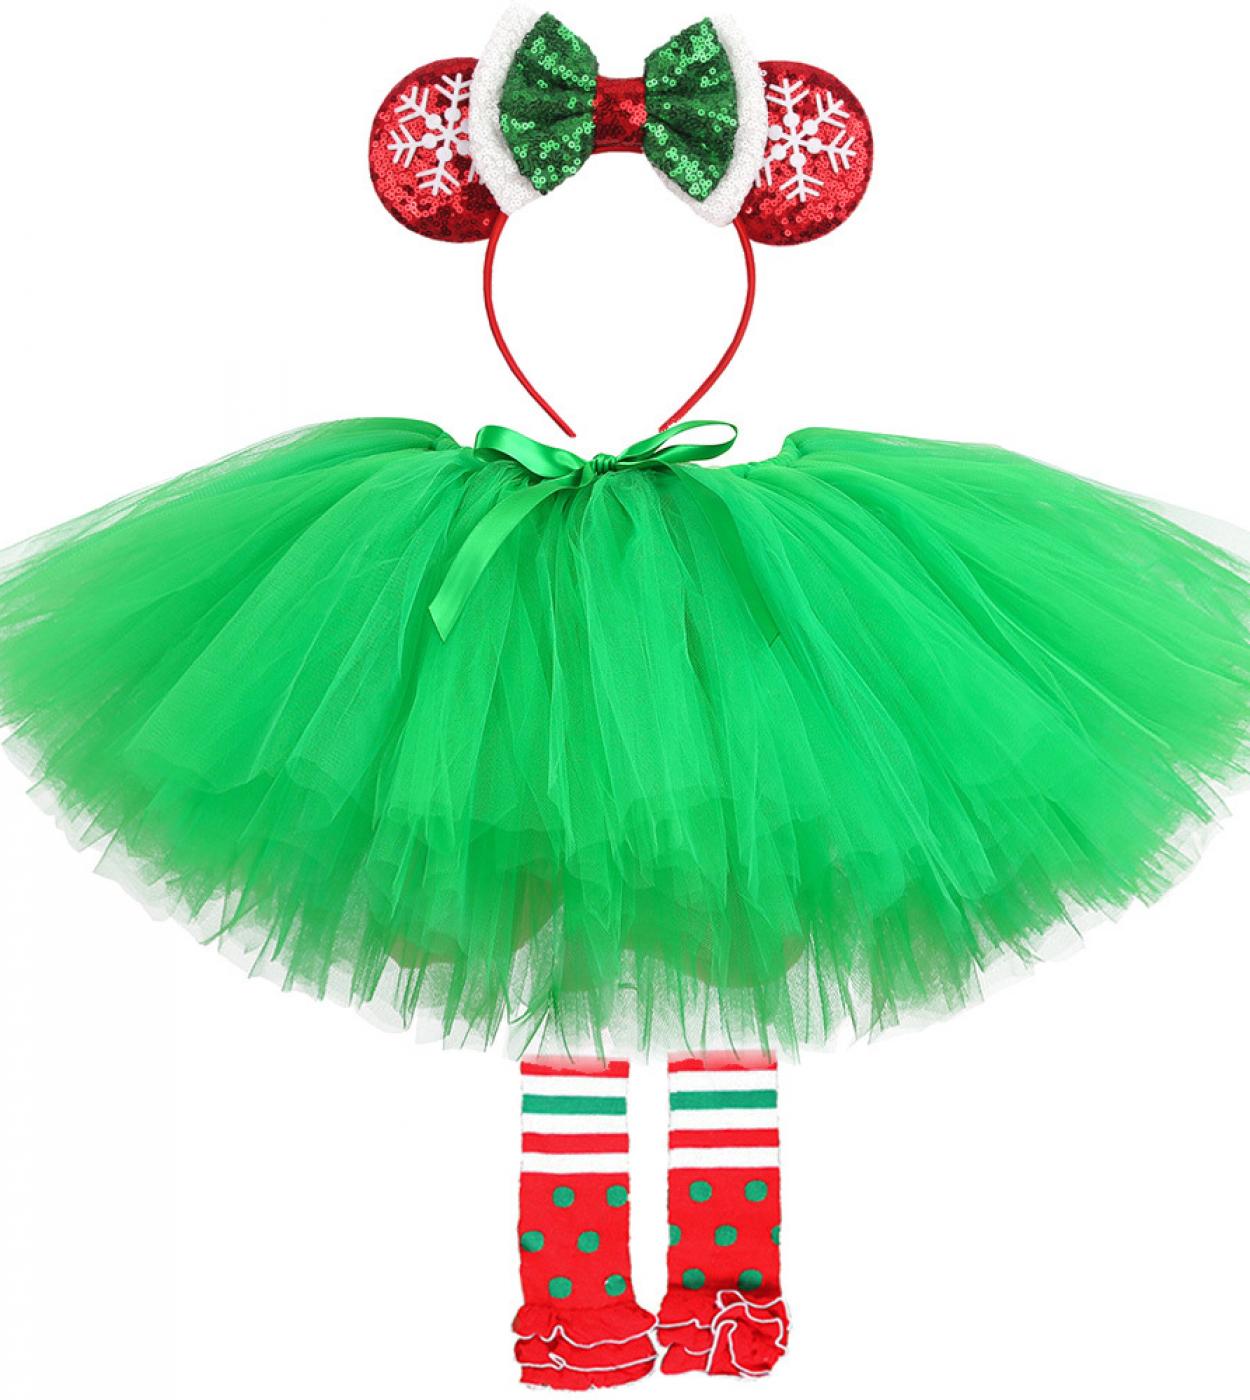 ملابس تنانير توتو للكريسماس باللون الأخضر للفتيات الصغيرات تنورات أميرة للأطفال الصغار لأعياد الميلاد وعيد الميلاد ج